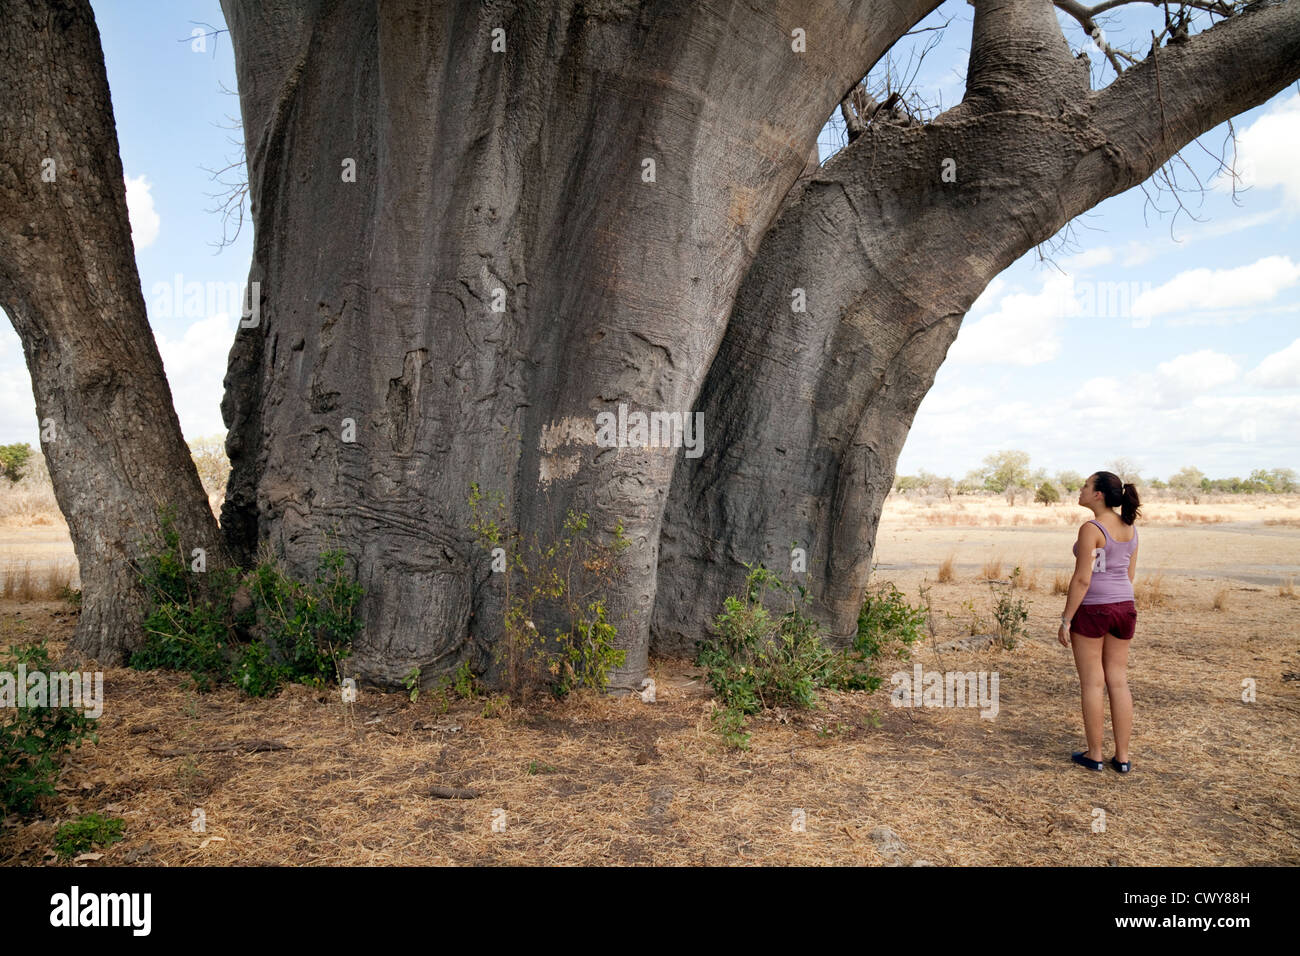 Une adolescente à la recherche à un très grand baobab Africain, 2600 ans, le Selous Tanzanie Afrique Banque D'Images